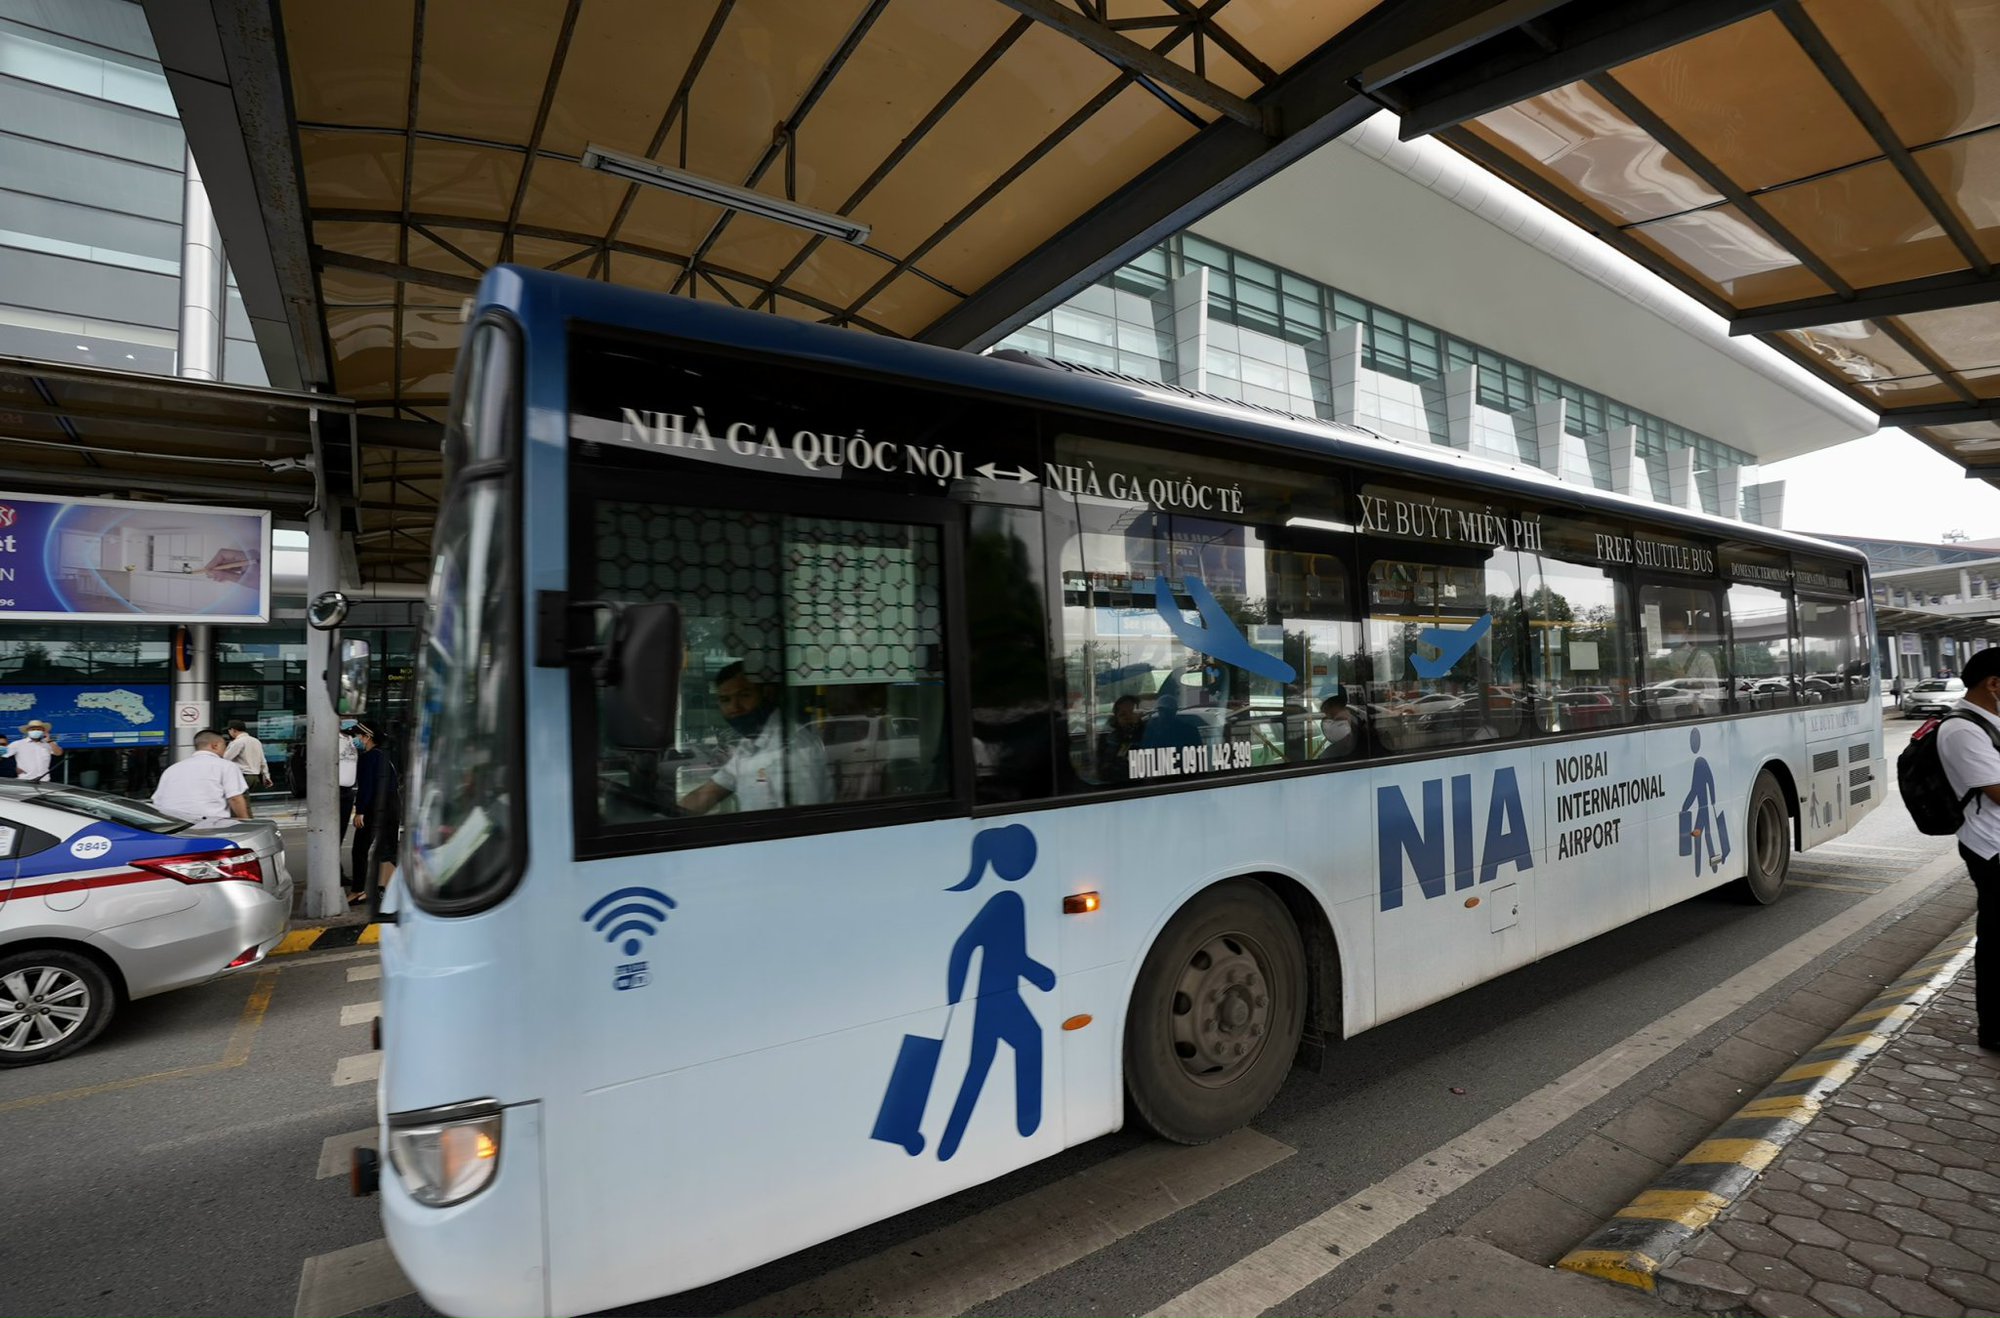 Khuyến cáo khách bay dùng xe nối chuyến miễn phí tại Nội Bài - Ảnh 8.